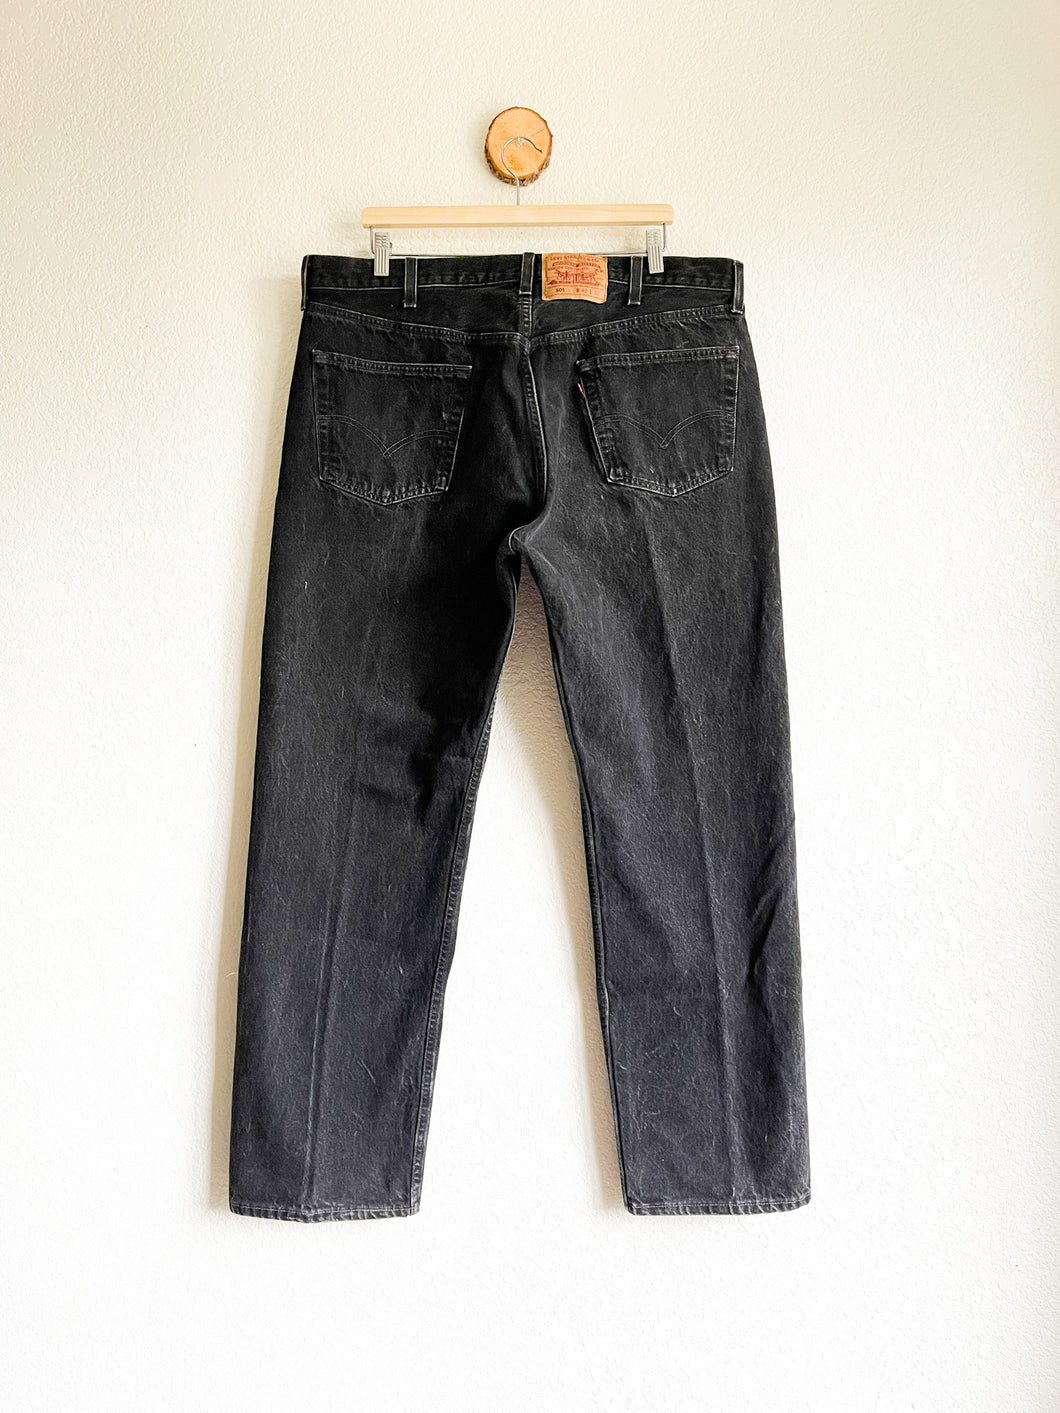 Vintage Levi's 501 Jeans - 40